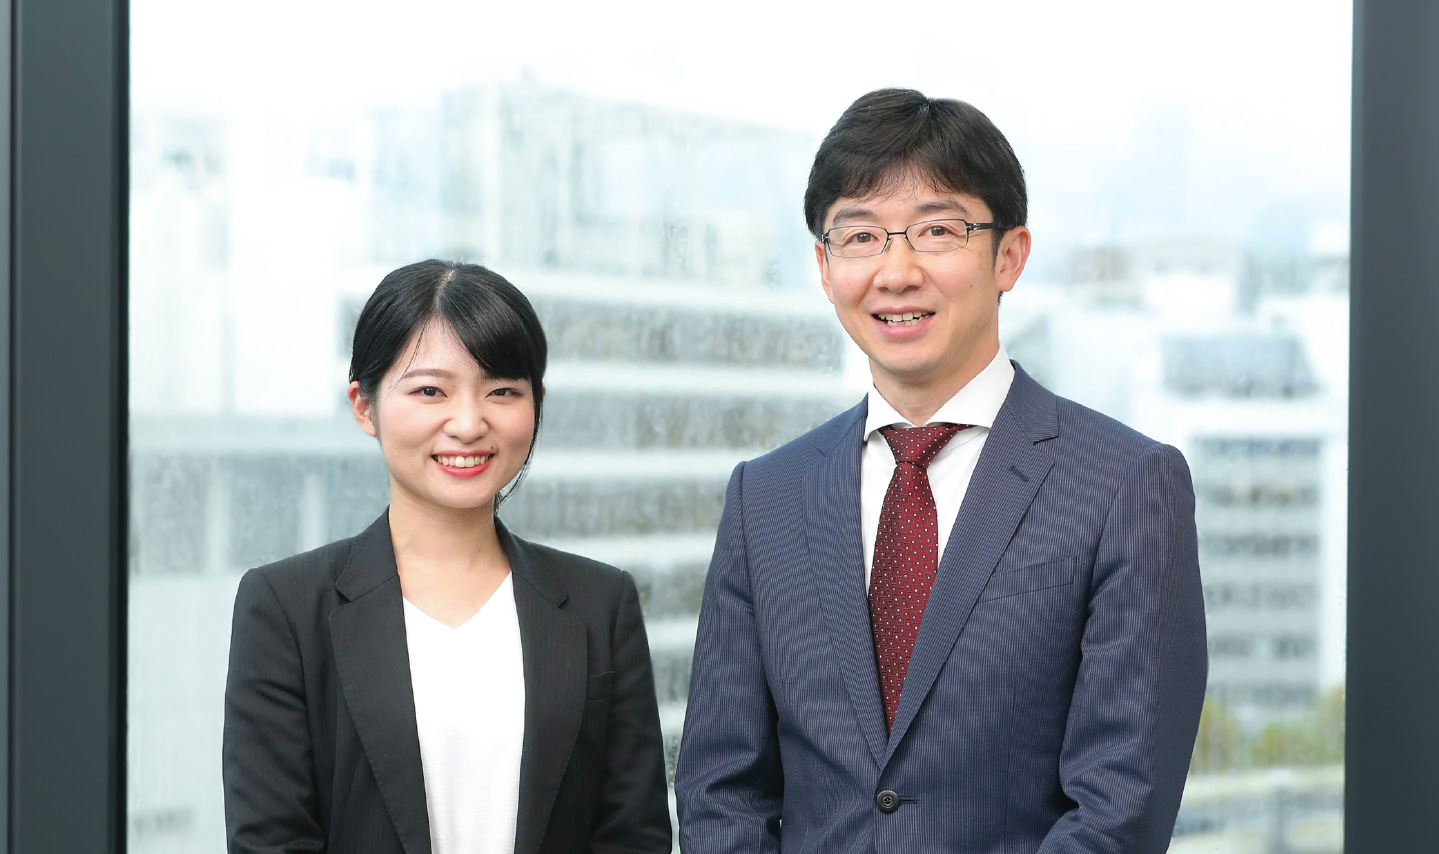 ホームページ 日本 公庫 政策 金融